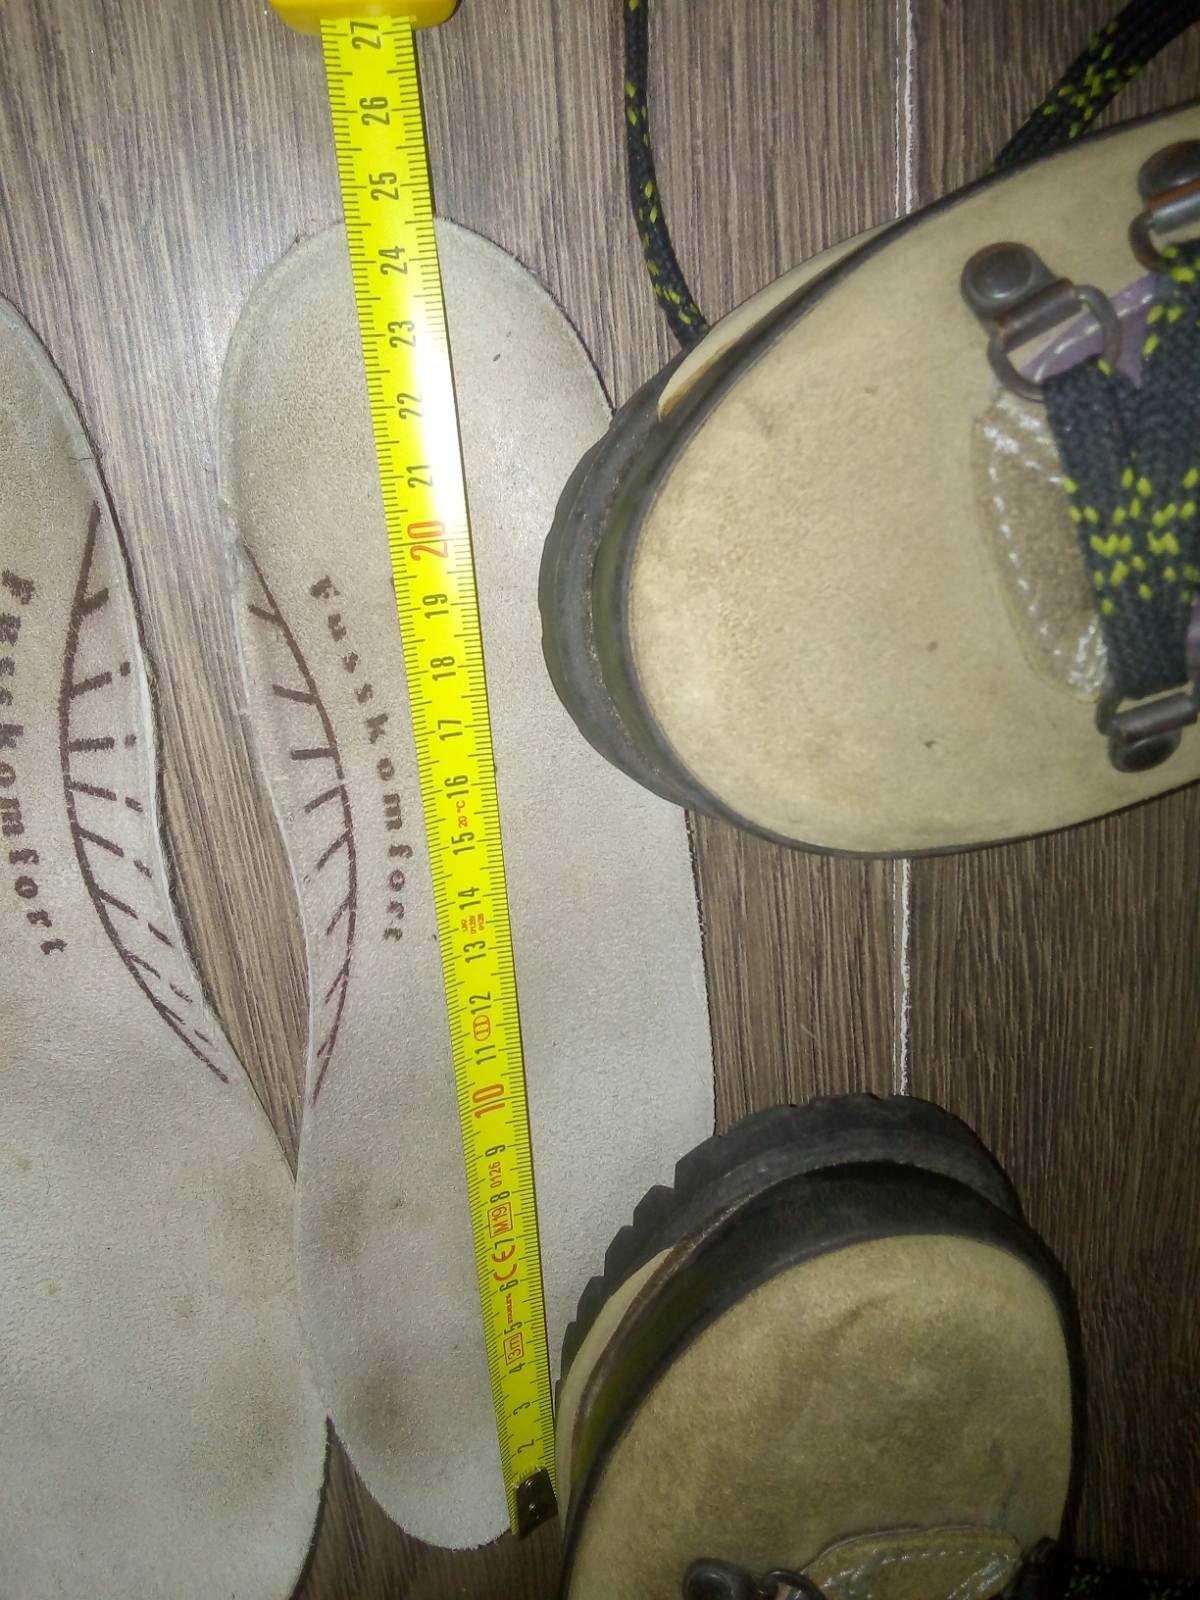 Ботинки треккинговые, горные, альпинистские. Рант 24,5 см